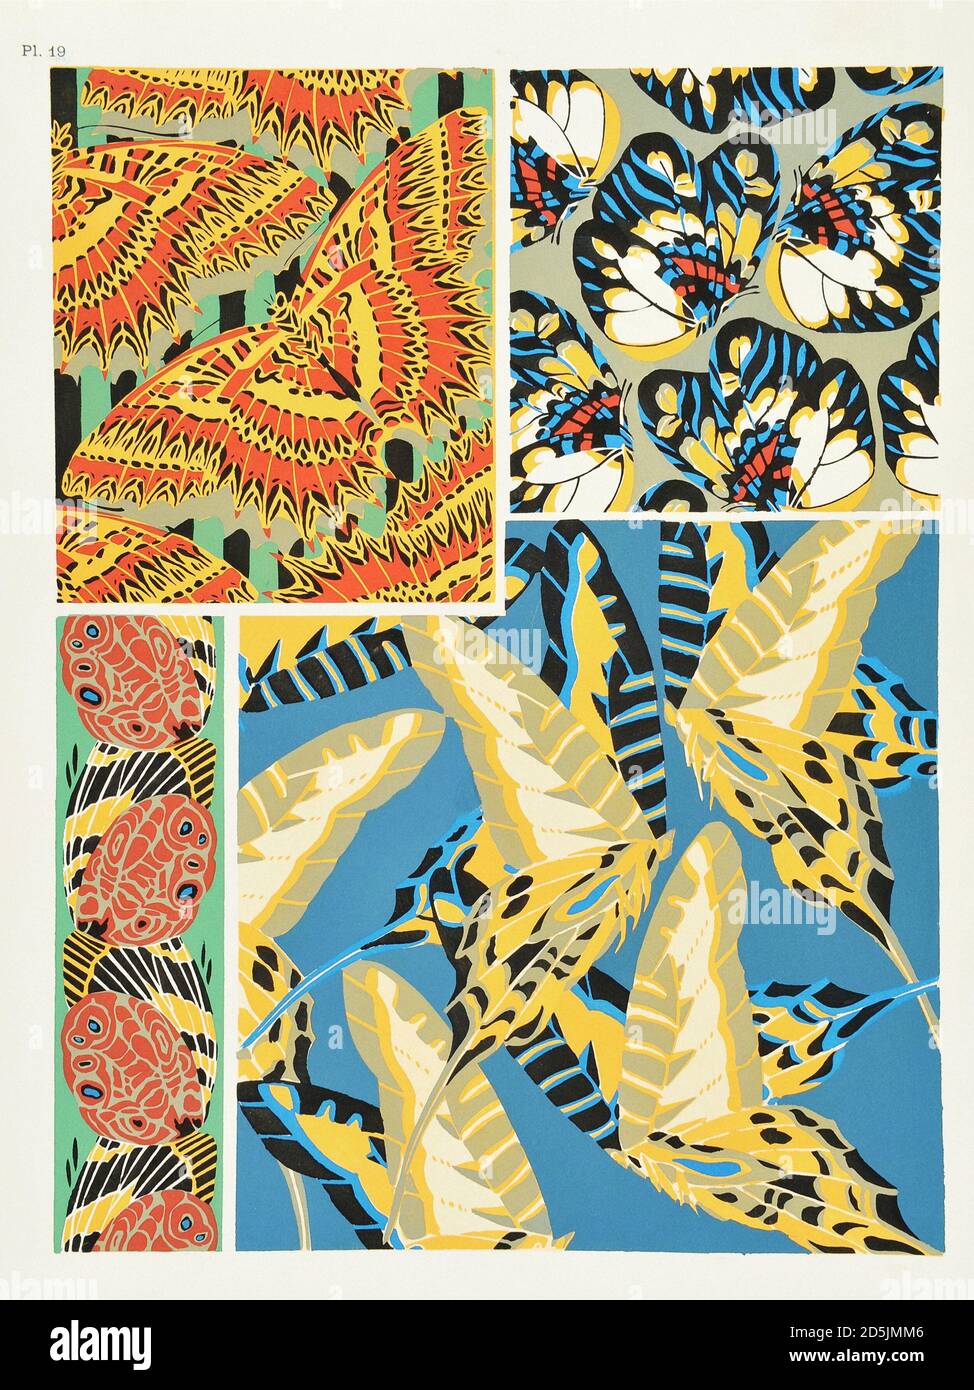 Papillons : vingt panneaux de phototype colorés au motif. PL X. Depuis le livre d'Emile-Allain Seguy (1877-1951). Paris, France. 1925 Banque D'Images